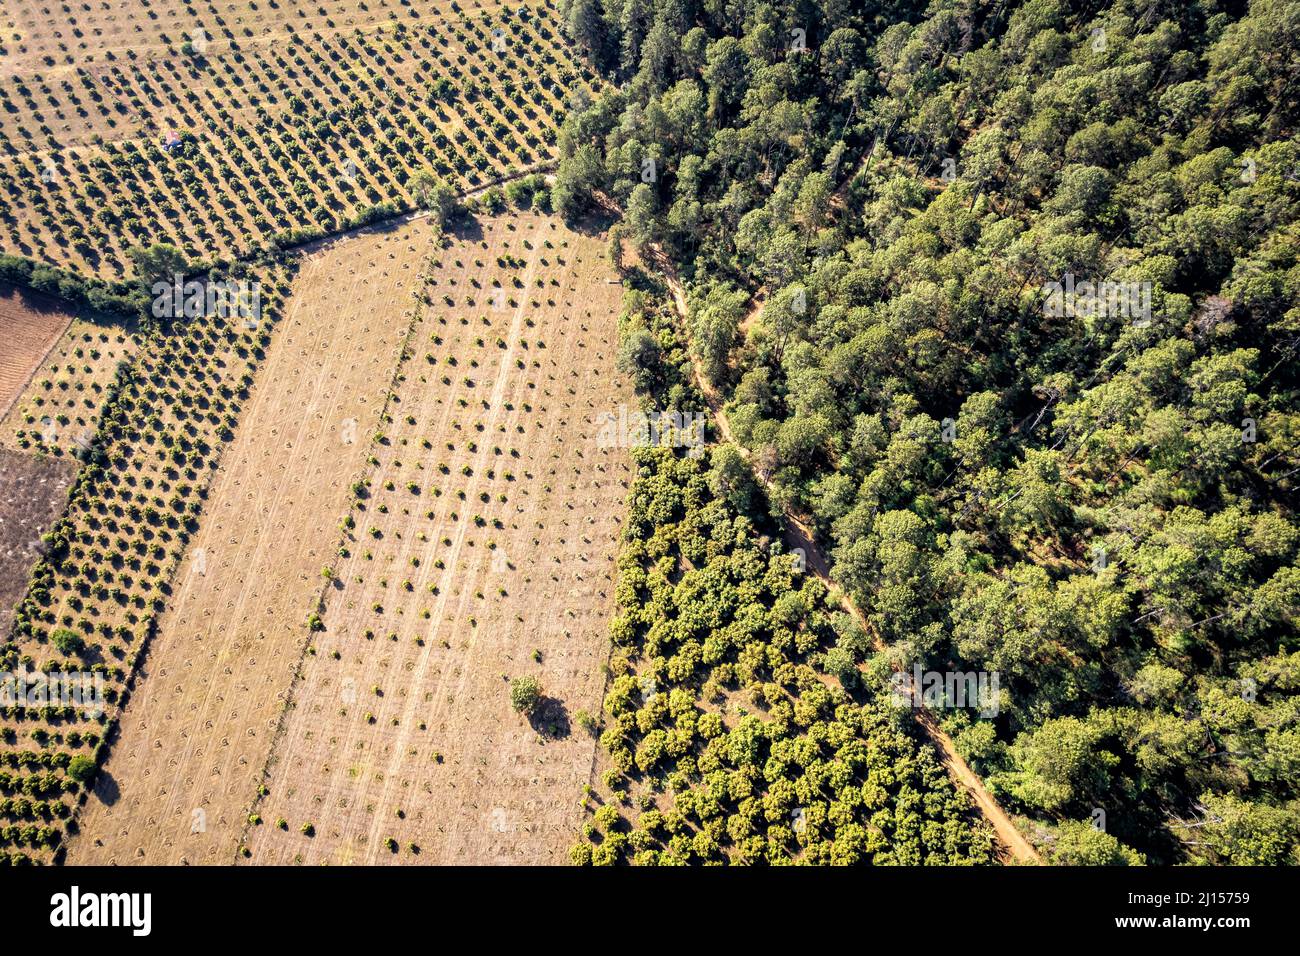 Bosque de árboles de pino y caducifolios infringido por huertos de aguacate recientemente plantados, Michoacán, México. Foto de stock